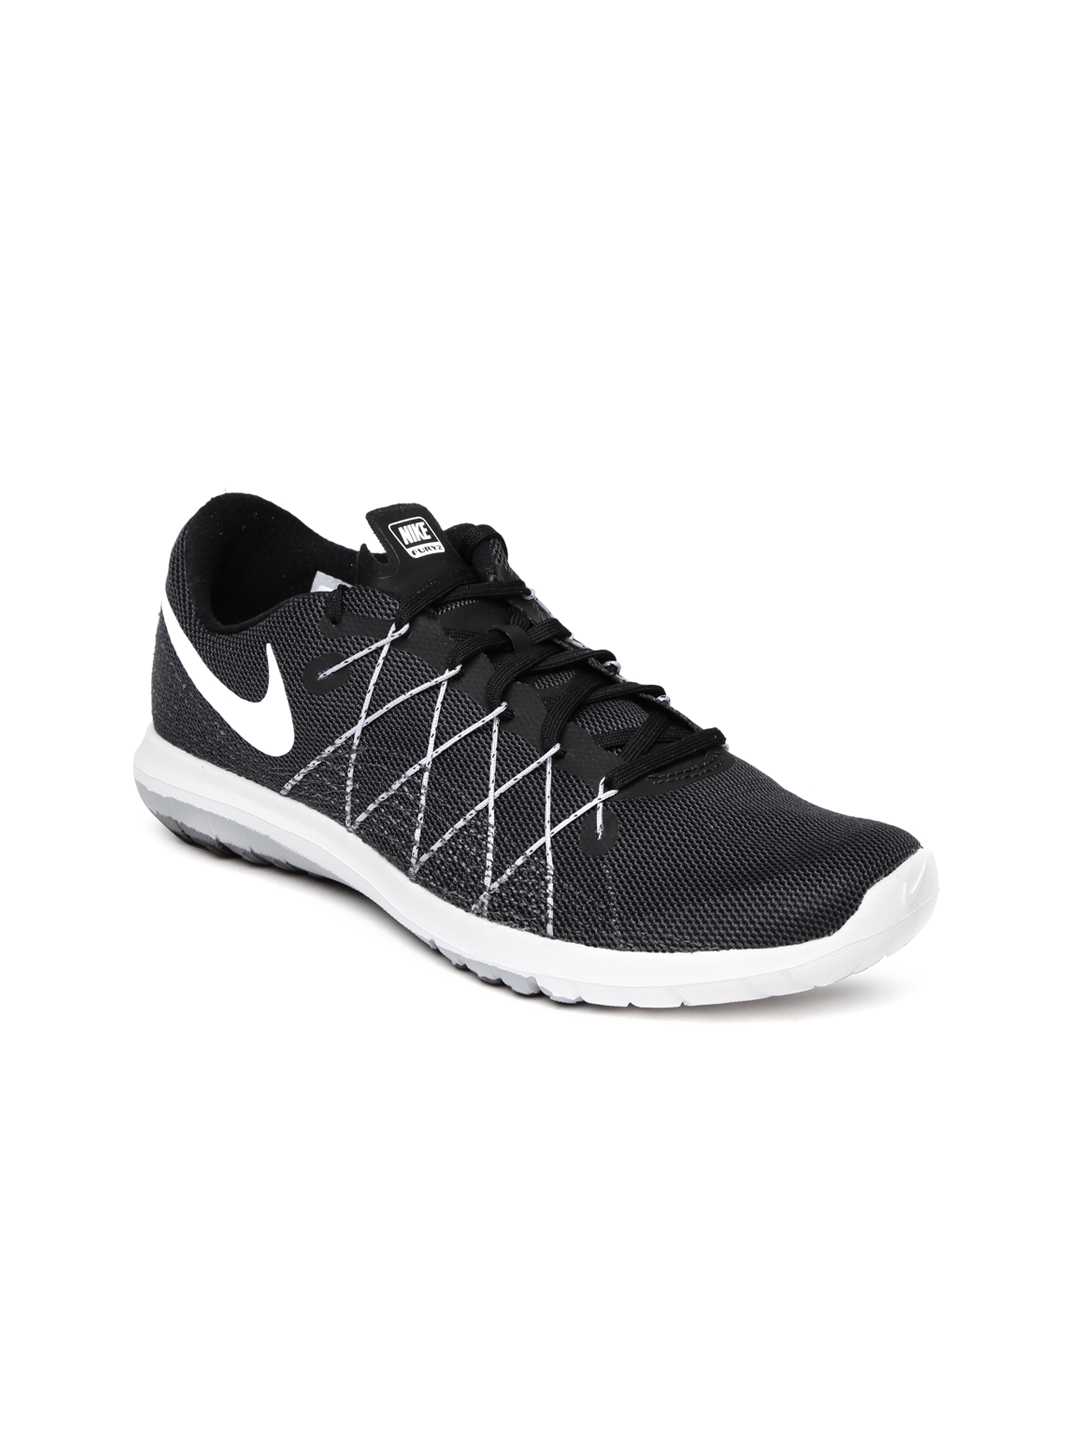 Buy Nike Women Charcoal Grey Flex Fury Training Shoes - Sports Shoes for Women 1109970 | Myntra